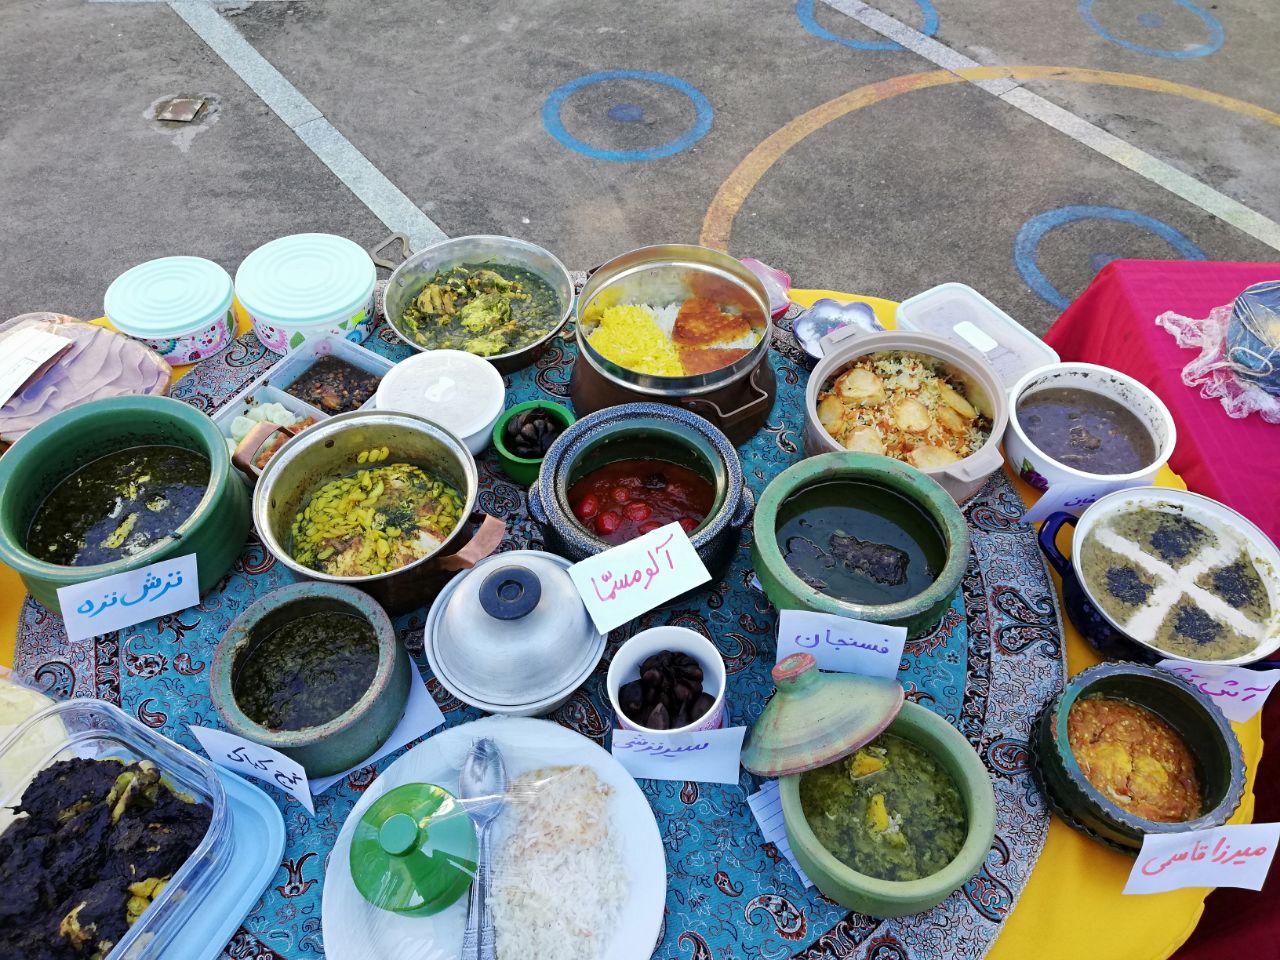 برگزاری جشنواره غذاهای محلی گیلان در دبستان باران اندیشه